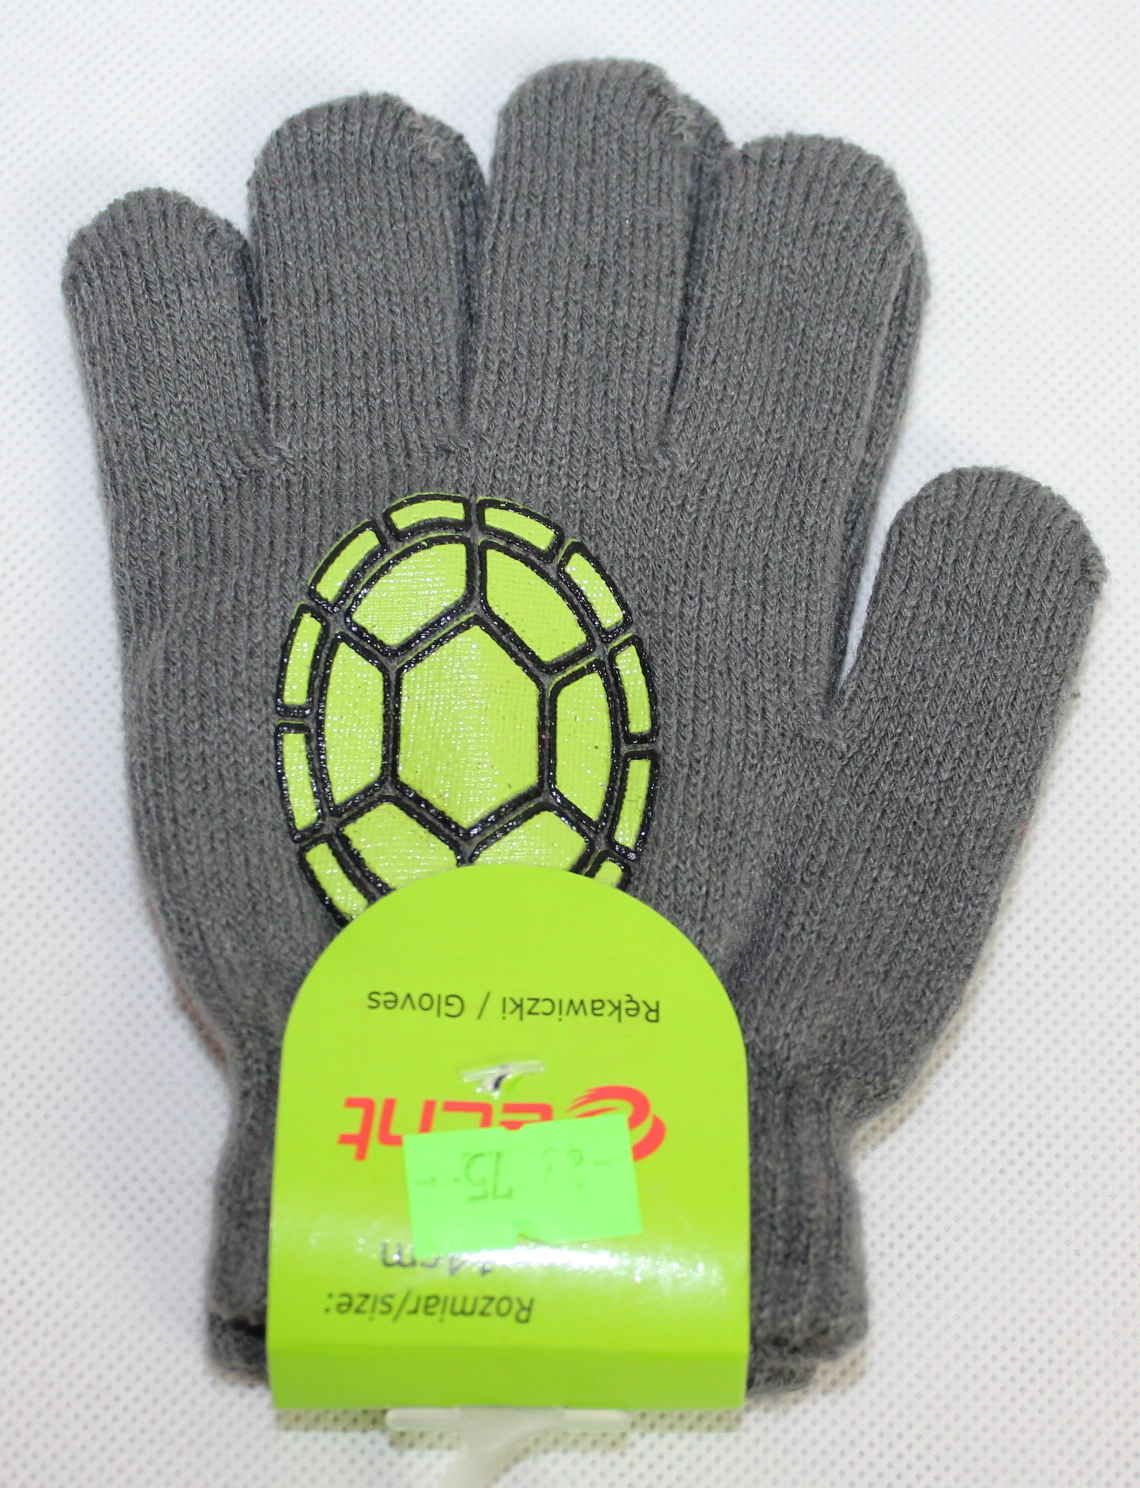 Dětské prstové rukavice,šedo-zelené prstové rukavice, slabé rukavice, pletené rukavice, chlapecké prstové rukavice Echt